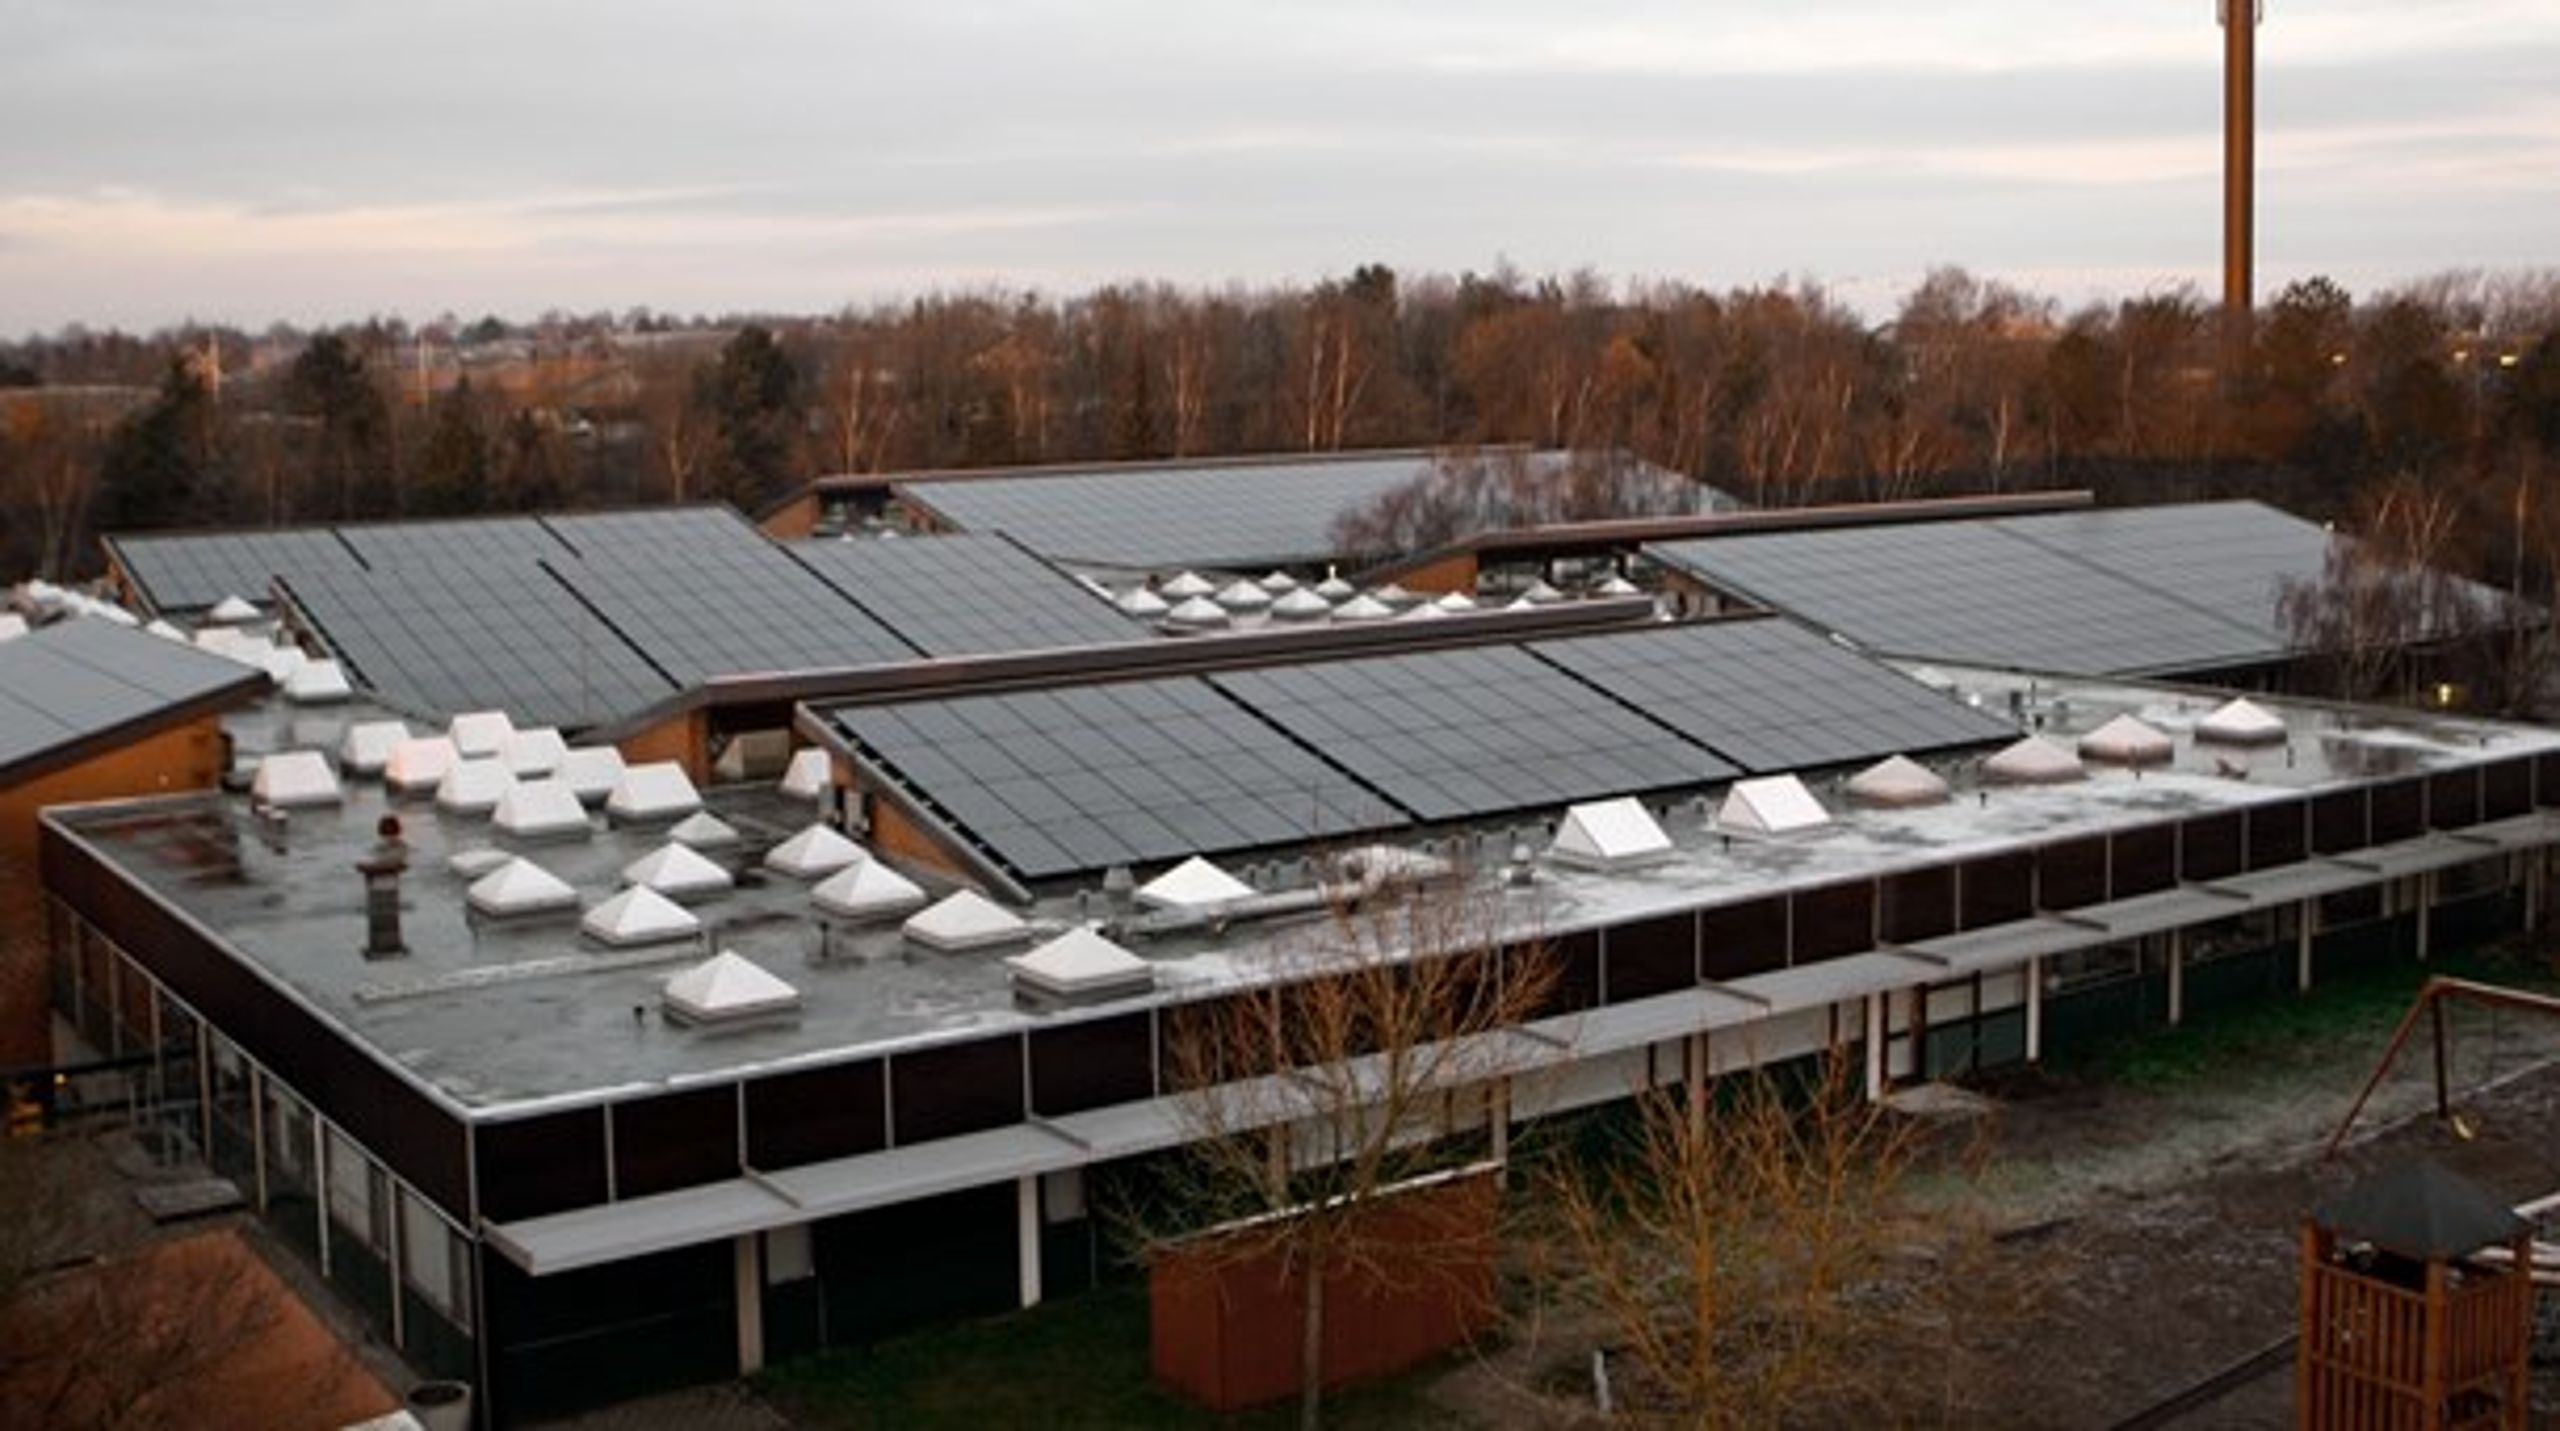 Taget på Skivehus Skole i Skive dækkes af et solcelleanlæg på 1700 kvadratmeter, men&nbsp;kommunernes muligheder for at opsætte solcelleanlæg besværliggøres af kravet om selskabsgørelse, skriver Jørn Pedersen (KL).&nbsp;